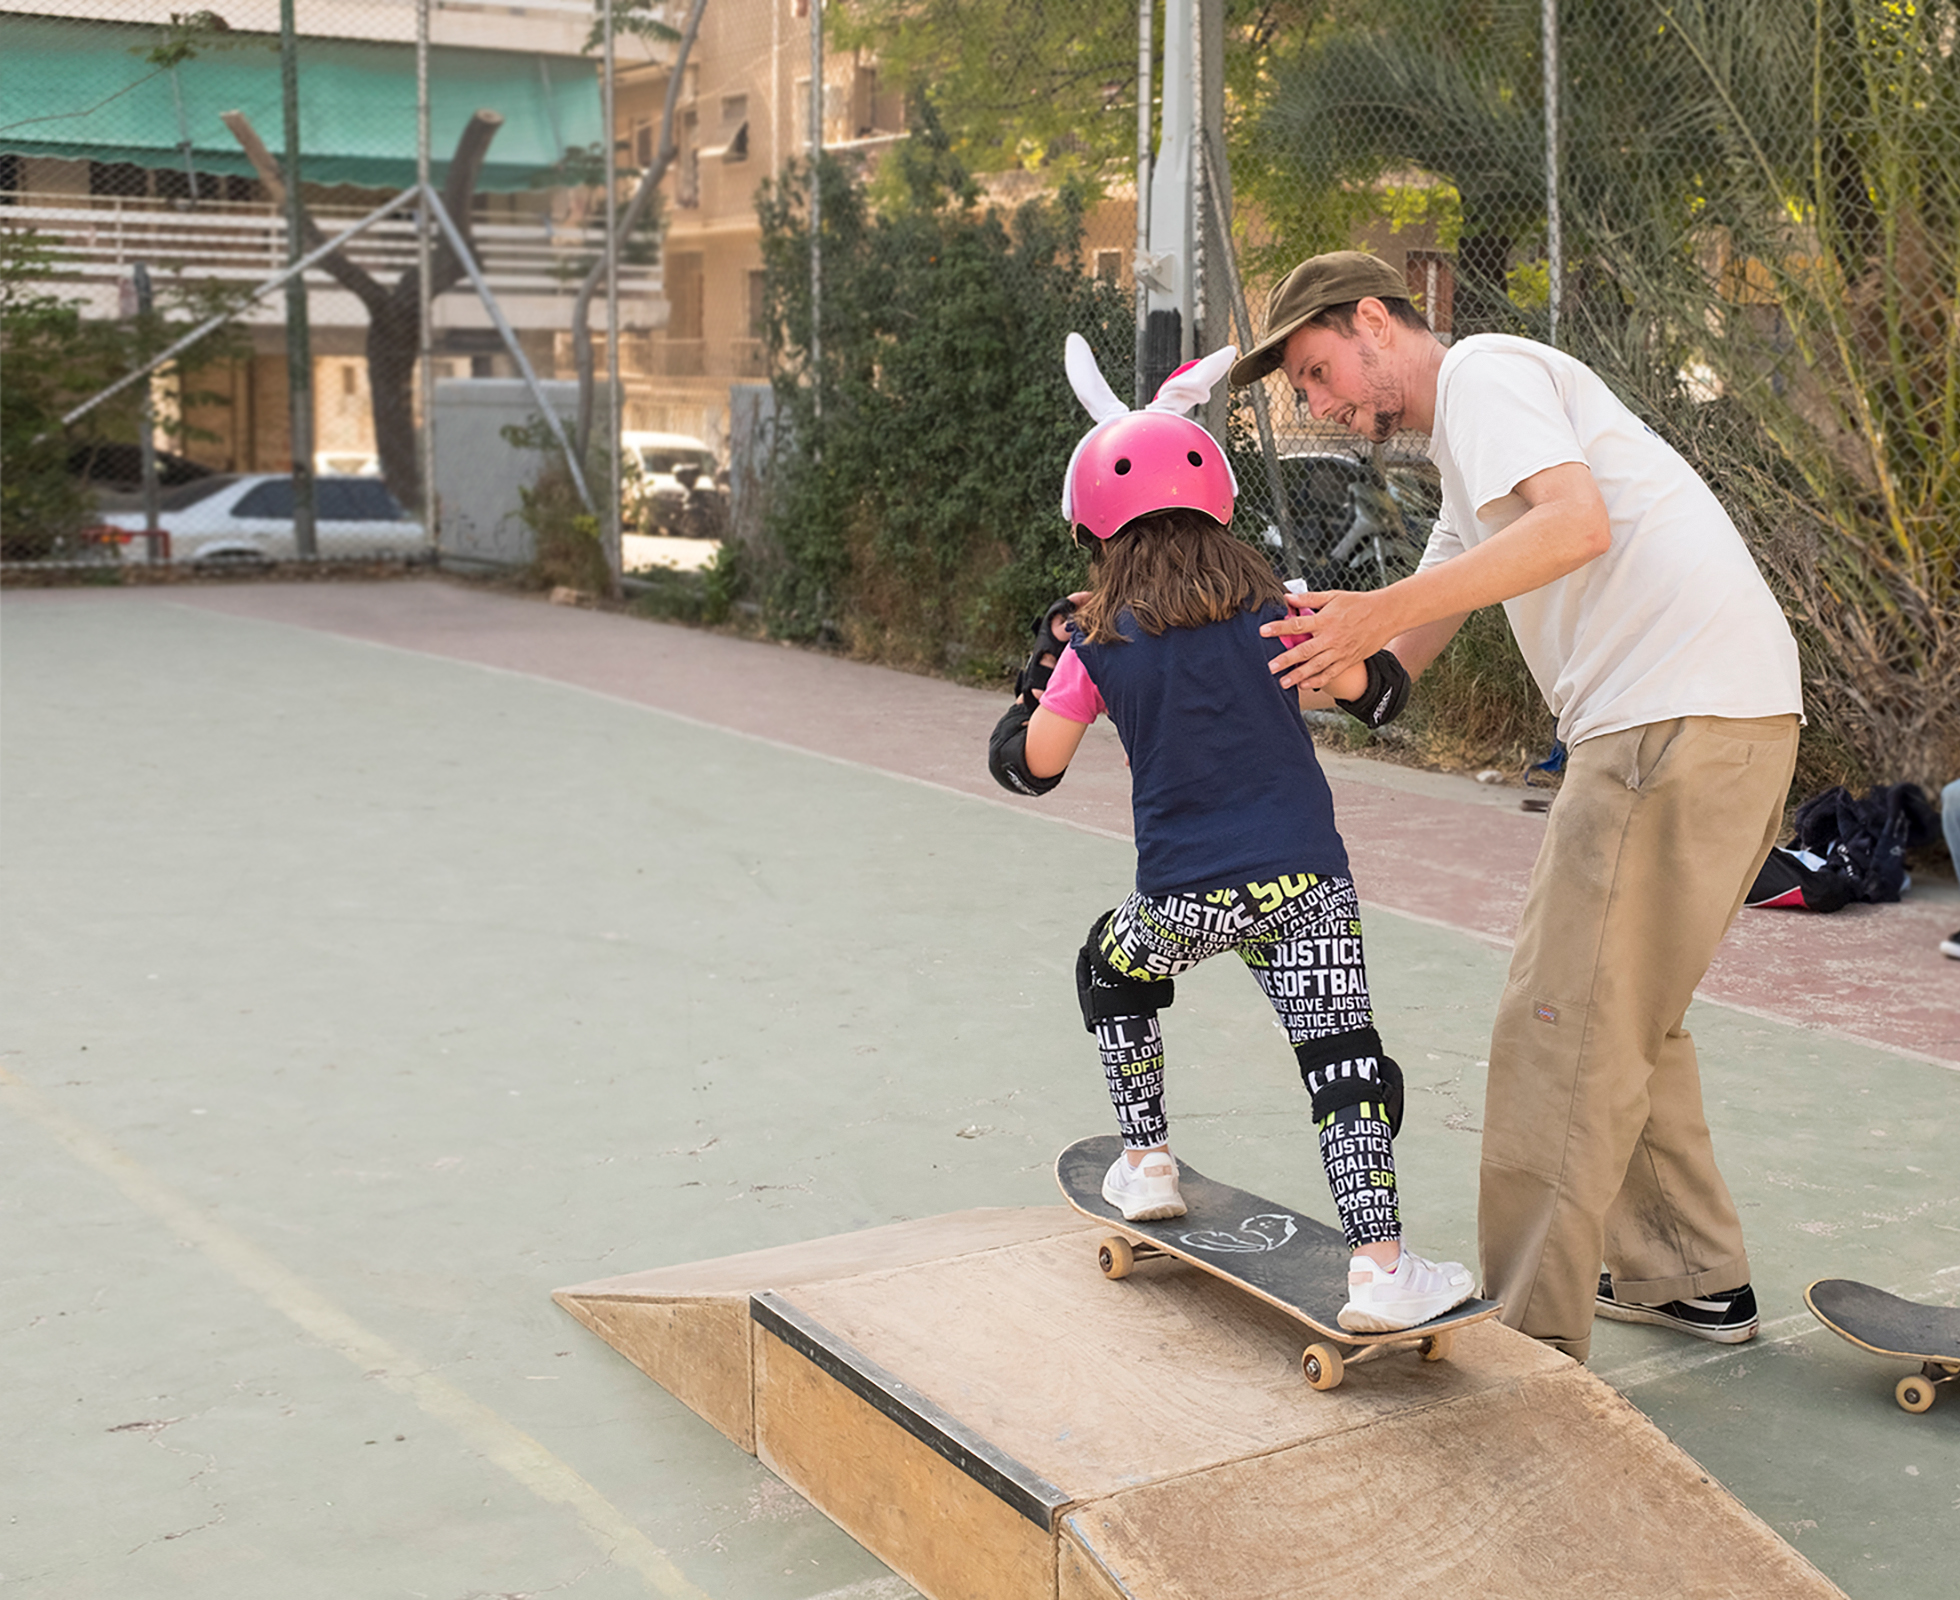 Free Movement Skateboarding: Μαθήματα skate για μια Αθήνα χωρίς αποκλεισμούς!